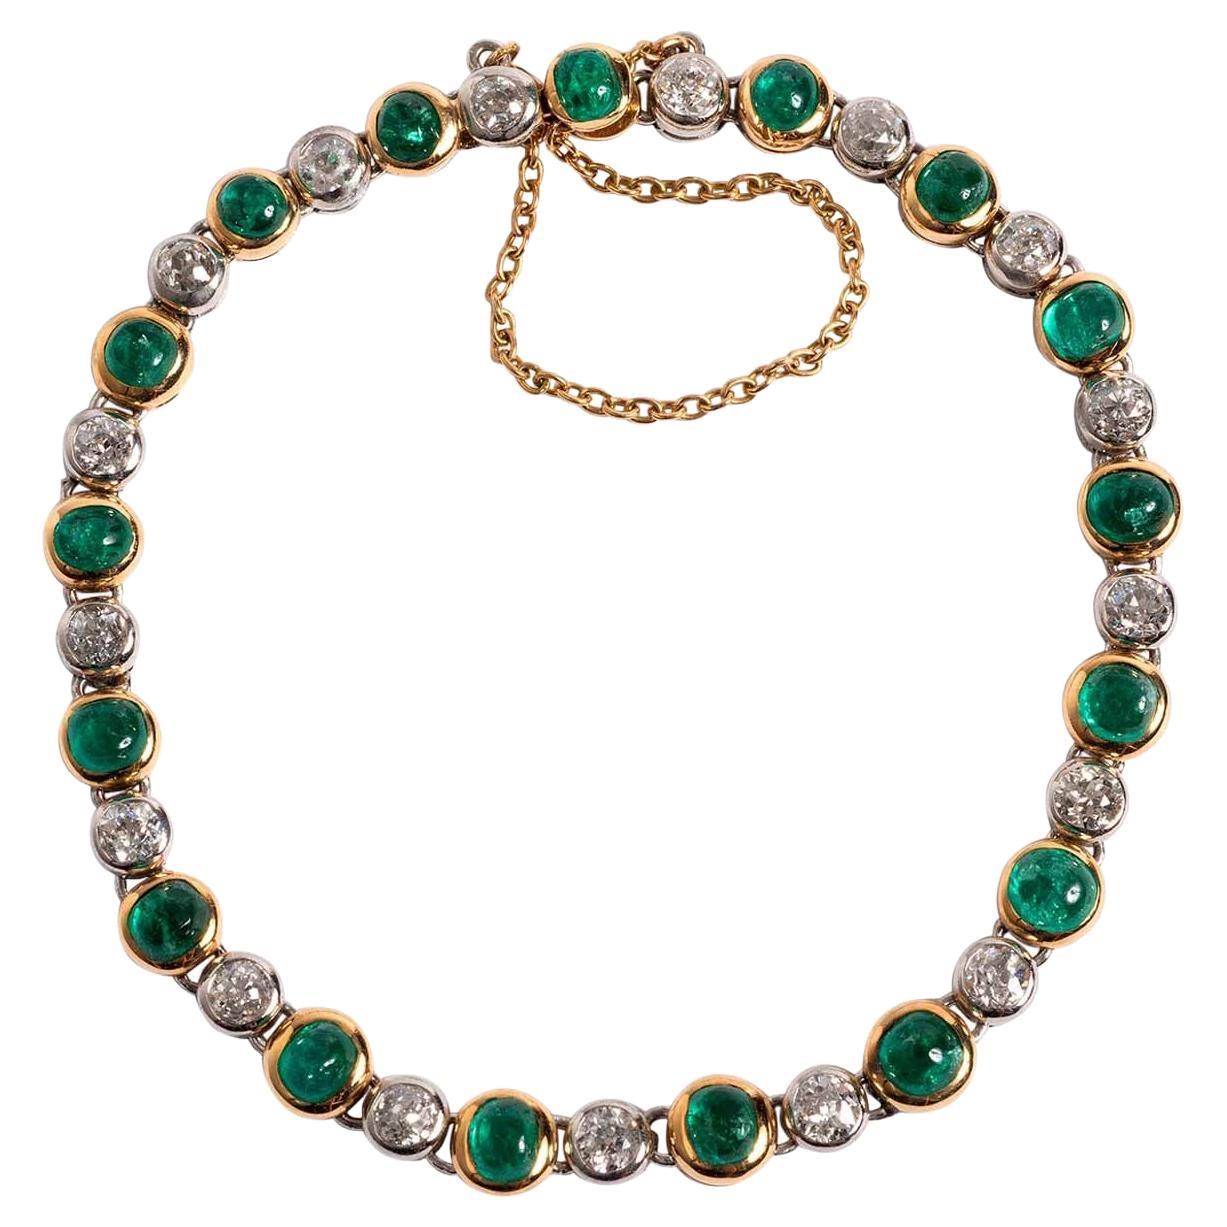 French Art Nouveau Bracelet with 17 Old Cut Diamonds & 17 Cabochon Emeralds